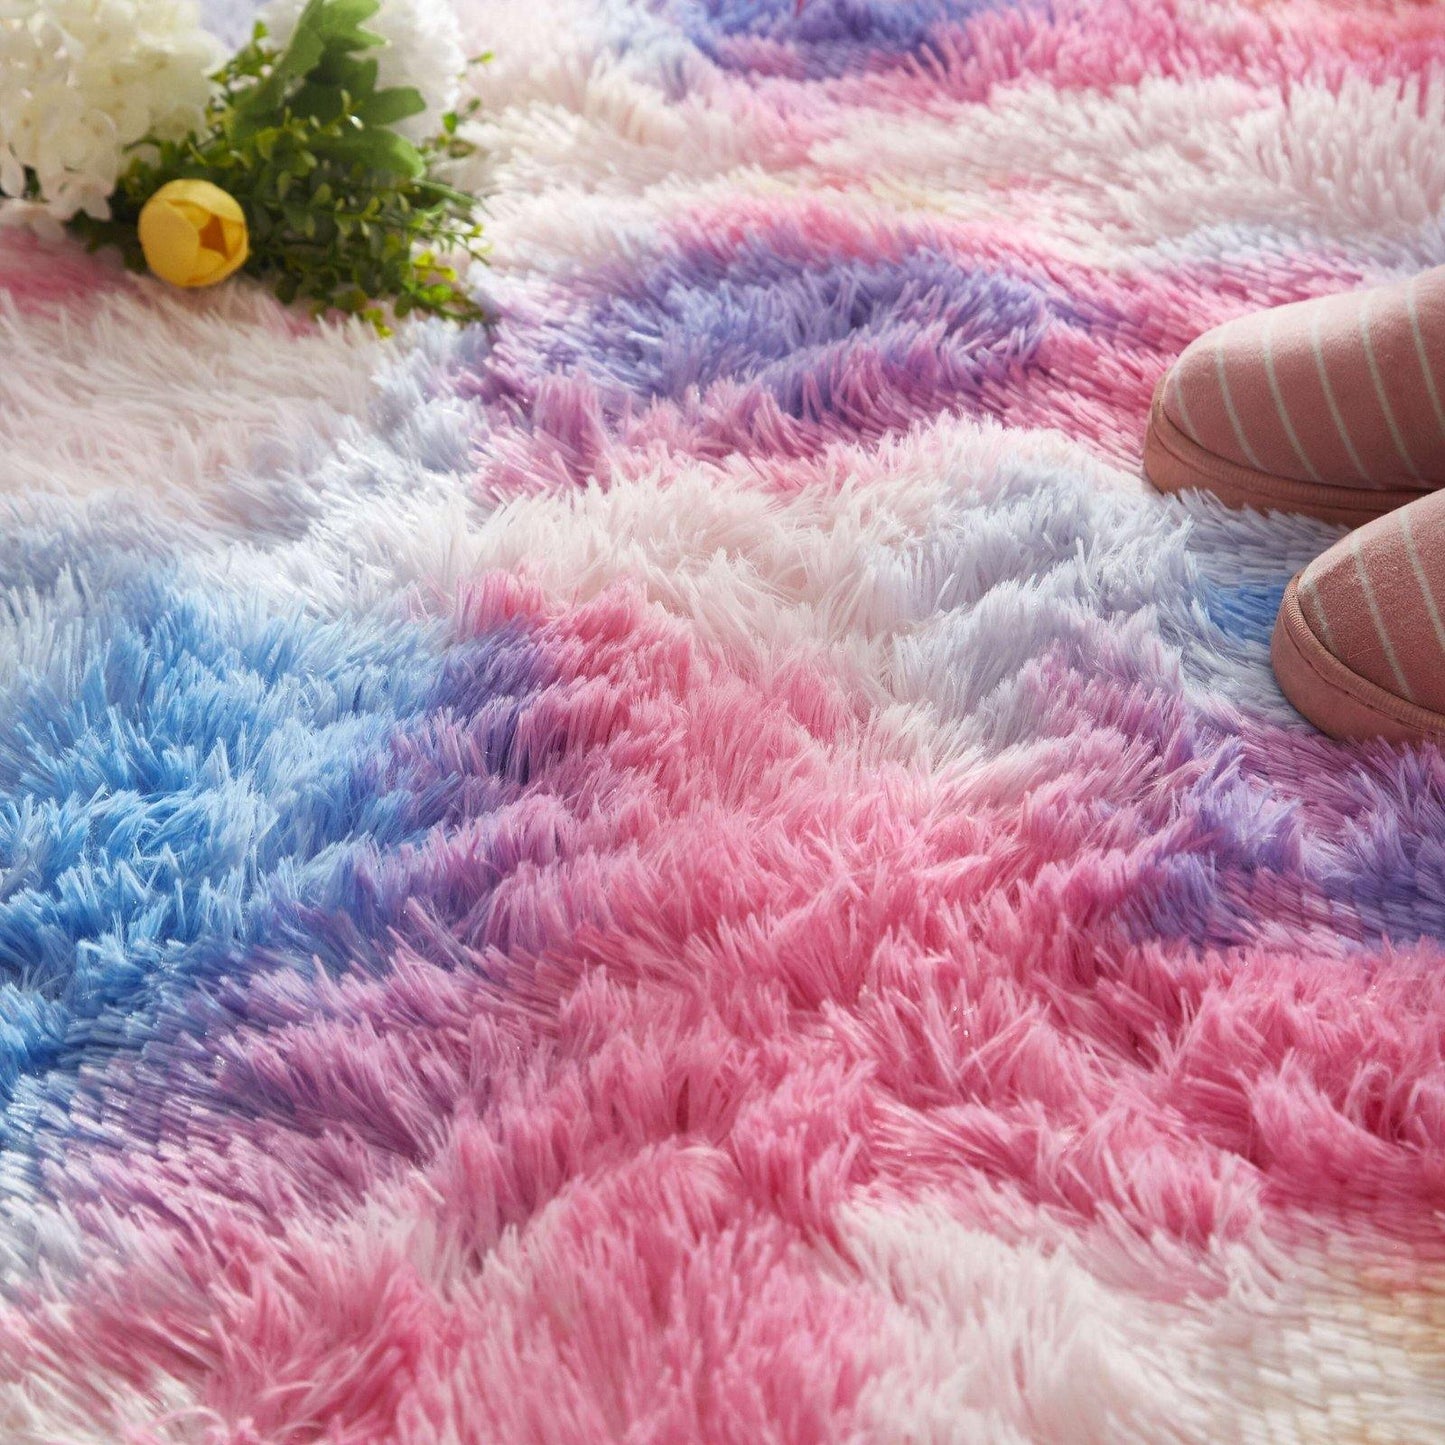 Colorful plush carpet - Wongs bedding